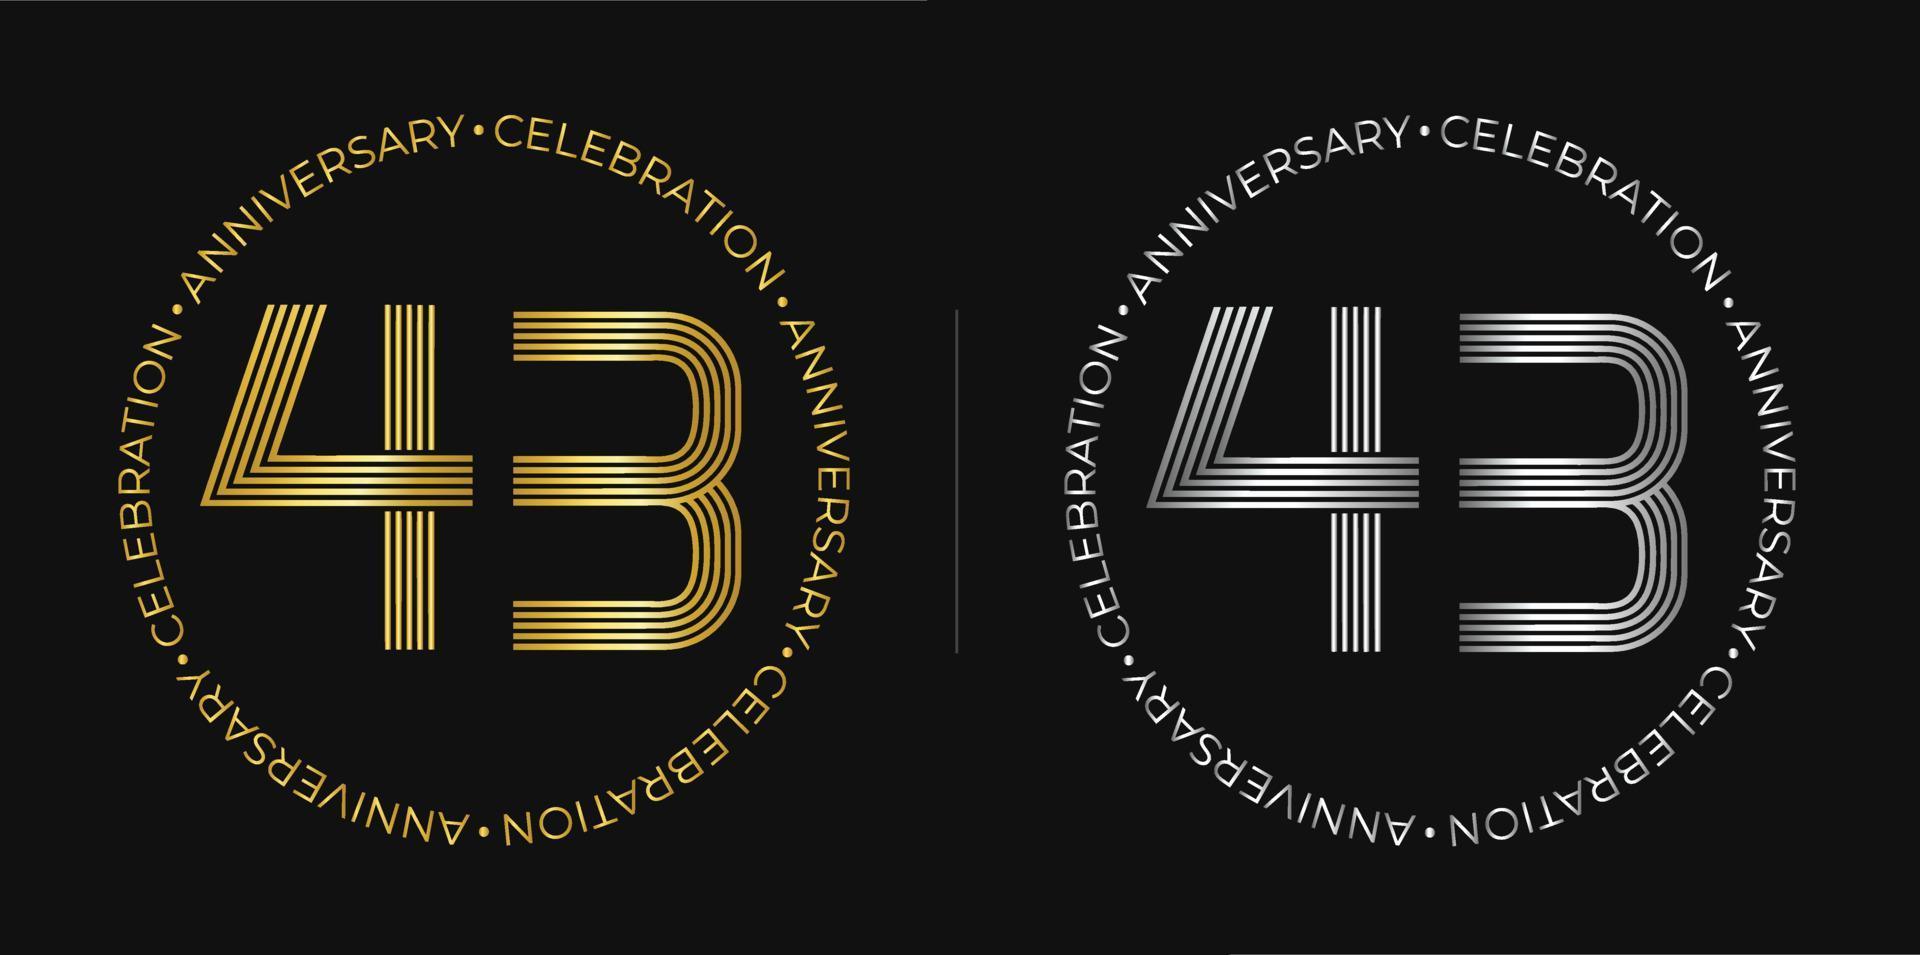 43 cumpleaños. banner de celebración de aniversario de cuarenta y tres años en colores dorado y plateado. logo circular con diseño de números originales en líneas elegantes. vector